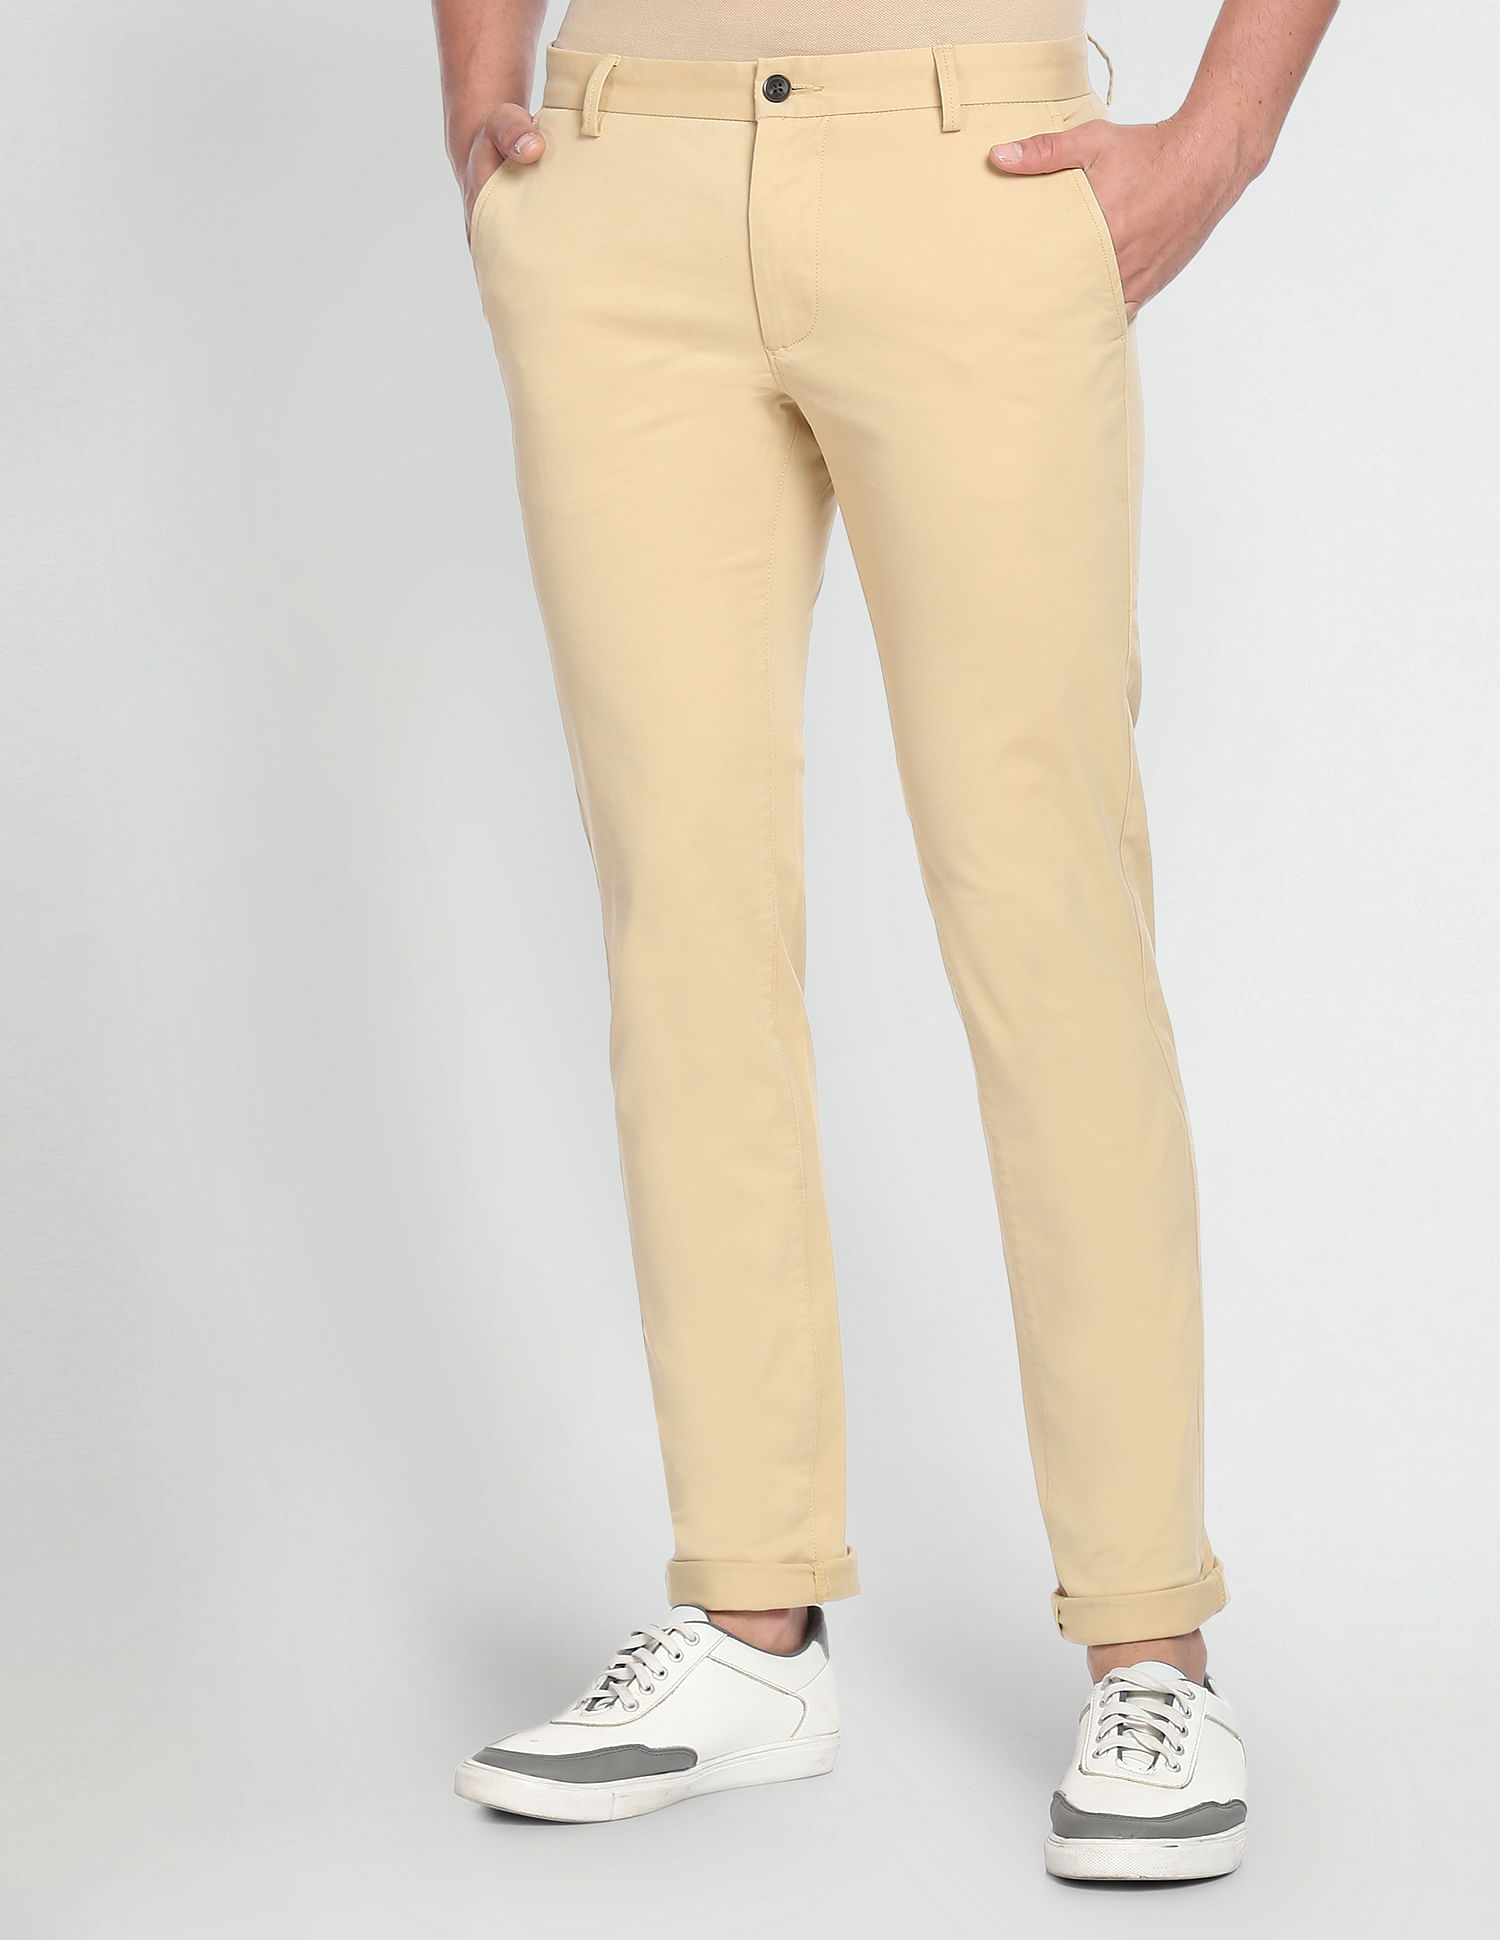 Allen Solly Brown Casual Trouser Buy Allen Solly Brown Casual Trouser  Online at Best Price in India  NykaaMan